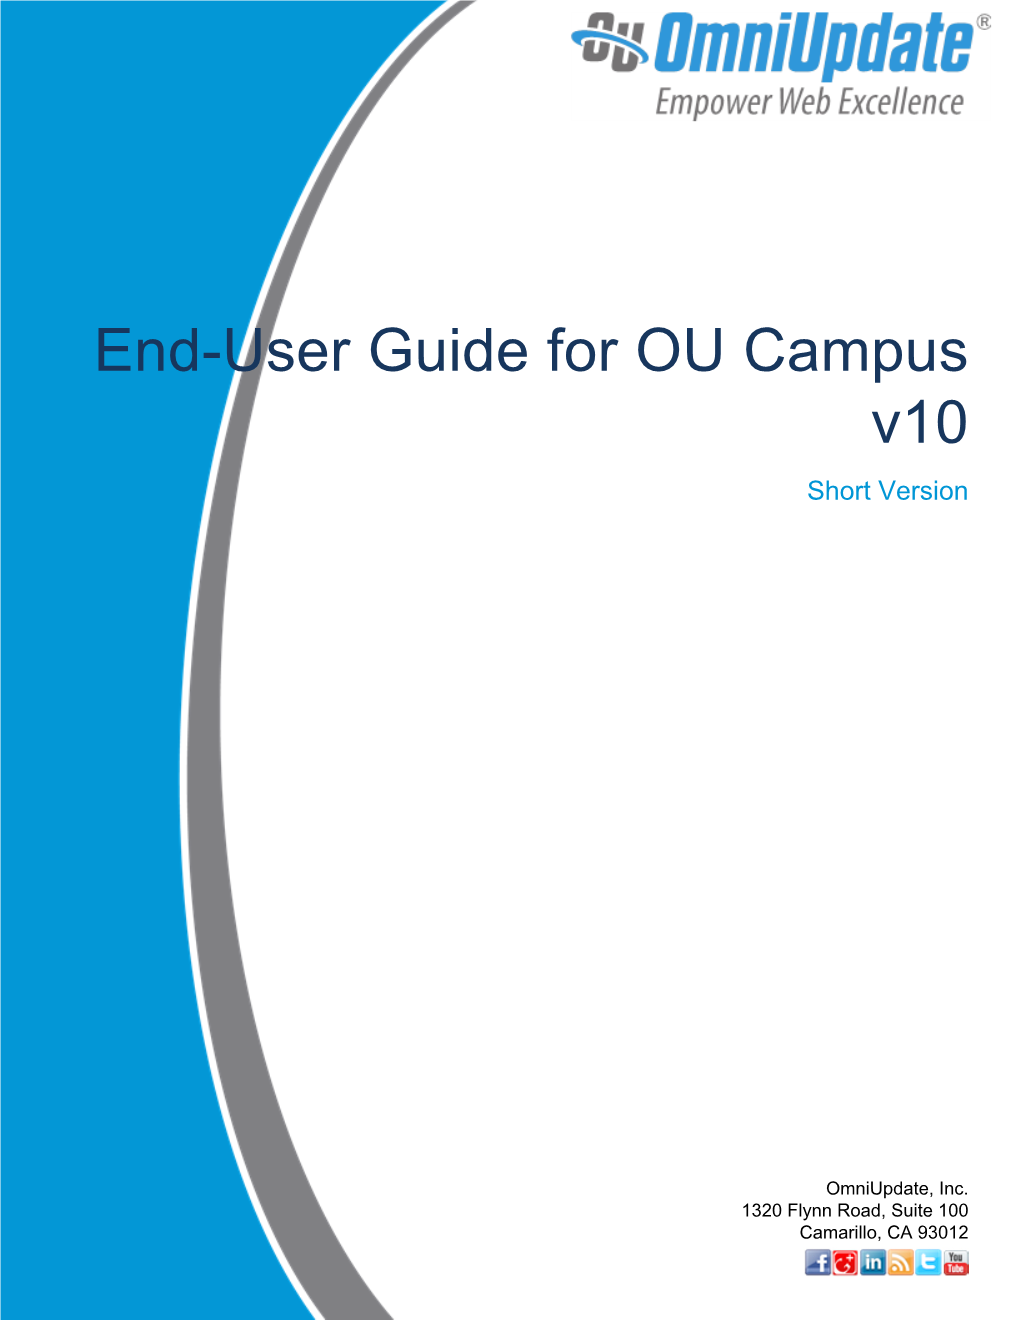 End-User Guide for OU Campus V10 Short Version